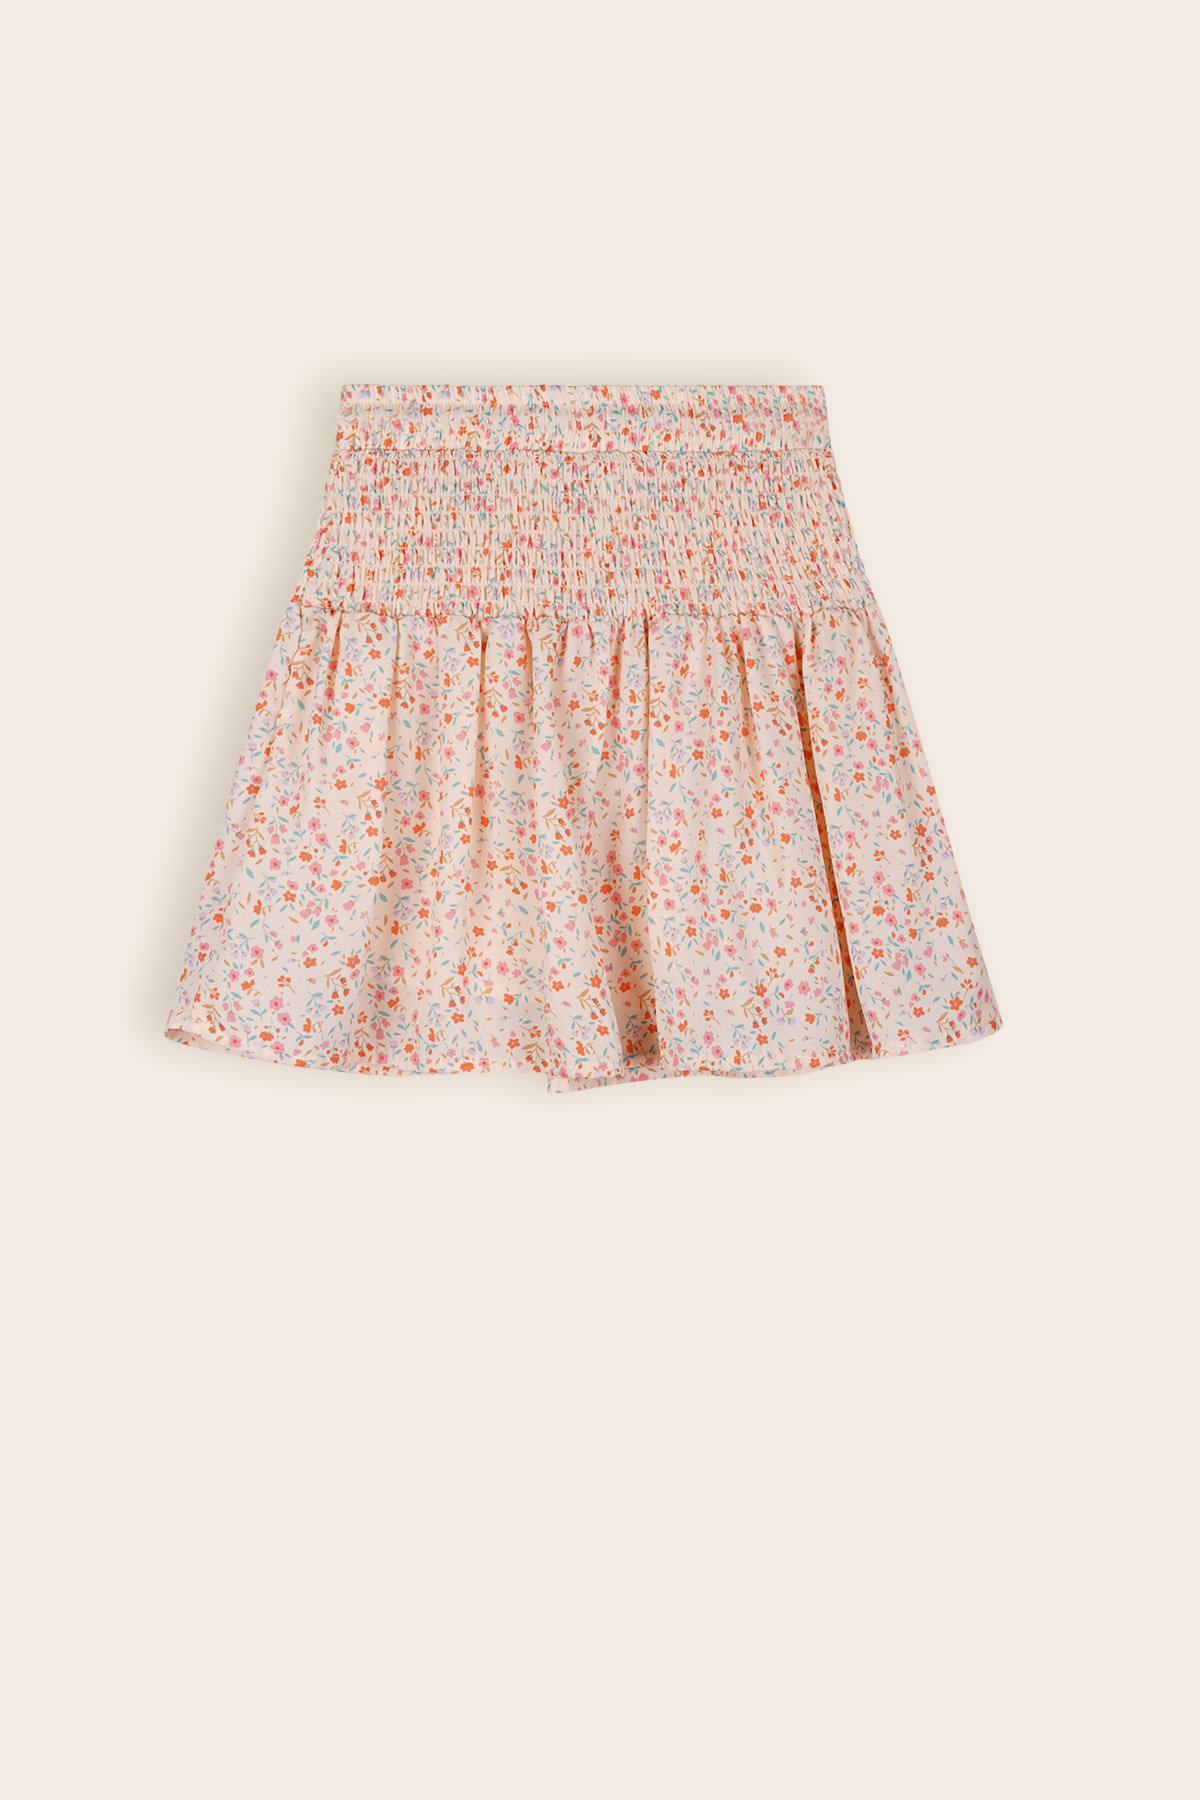 Nami Little Flower Skirt